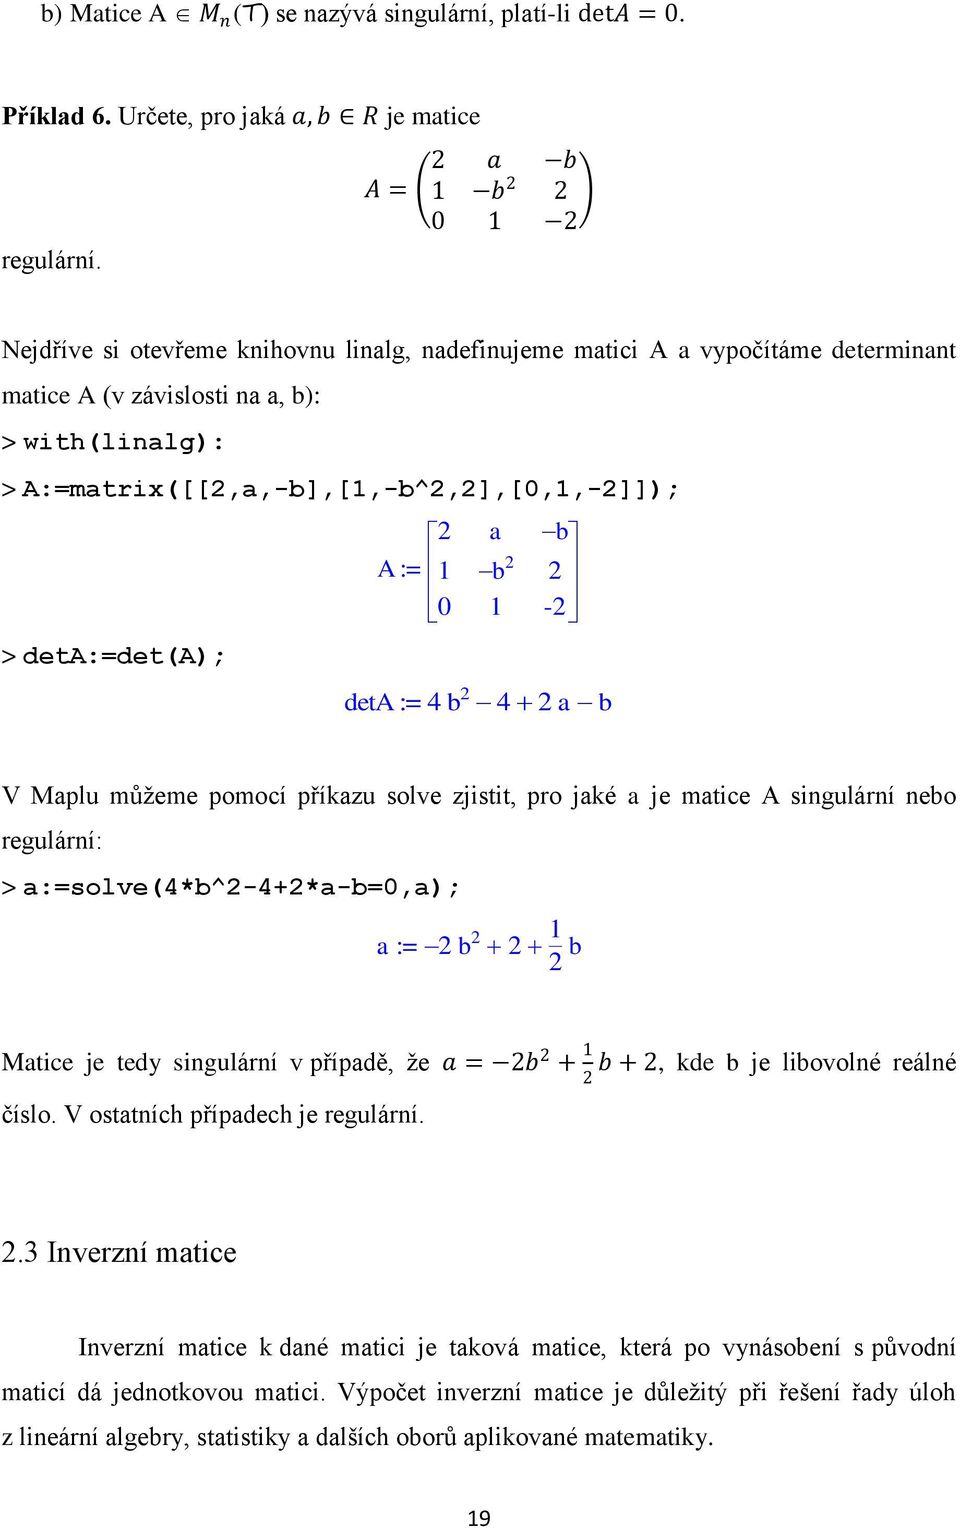 deta:=det(a); a b A := 1 b 0 1 - deta := 4 b 4 ab V Maplu můžeme pomocí příkazu solve zjistit, pro jaké a je matice A singulární nebo regulární: > a:=solve(4*b^-4+*a-b=0,a); a := b 1 b Matice je tedy